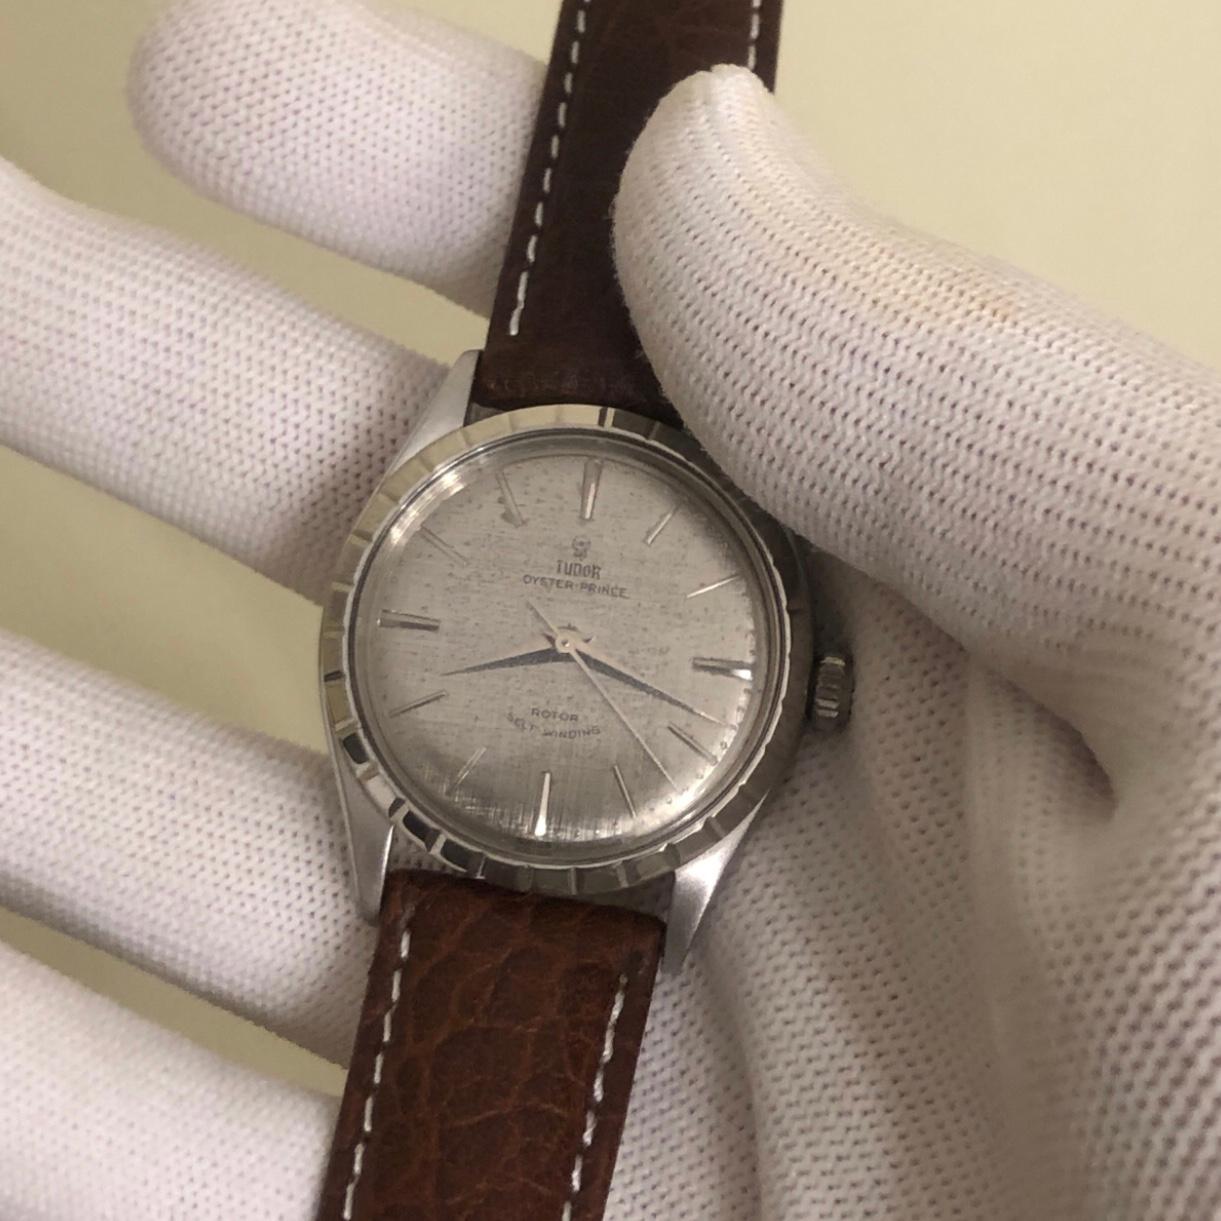 Rolex Tudor Oyster Prince 34mm Stainless Steel Vintage Watch with booklet papers. 

Ce garde-temps Rolex Tudor authentique est doté d'une lunette en acier inoxydable de 34 mm et d'une couronne Rolex à double verrouillage. La montre Tudor